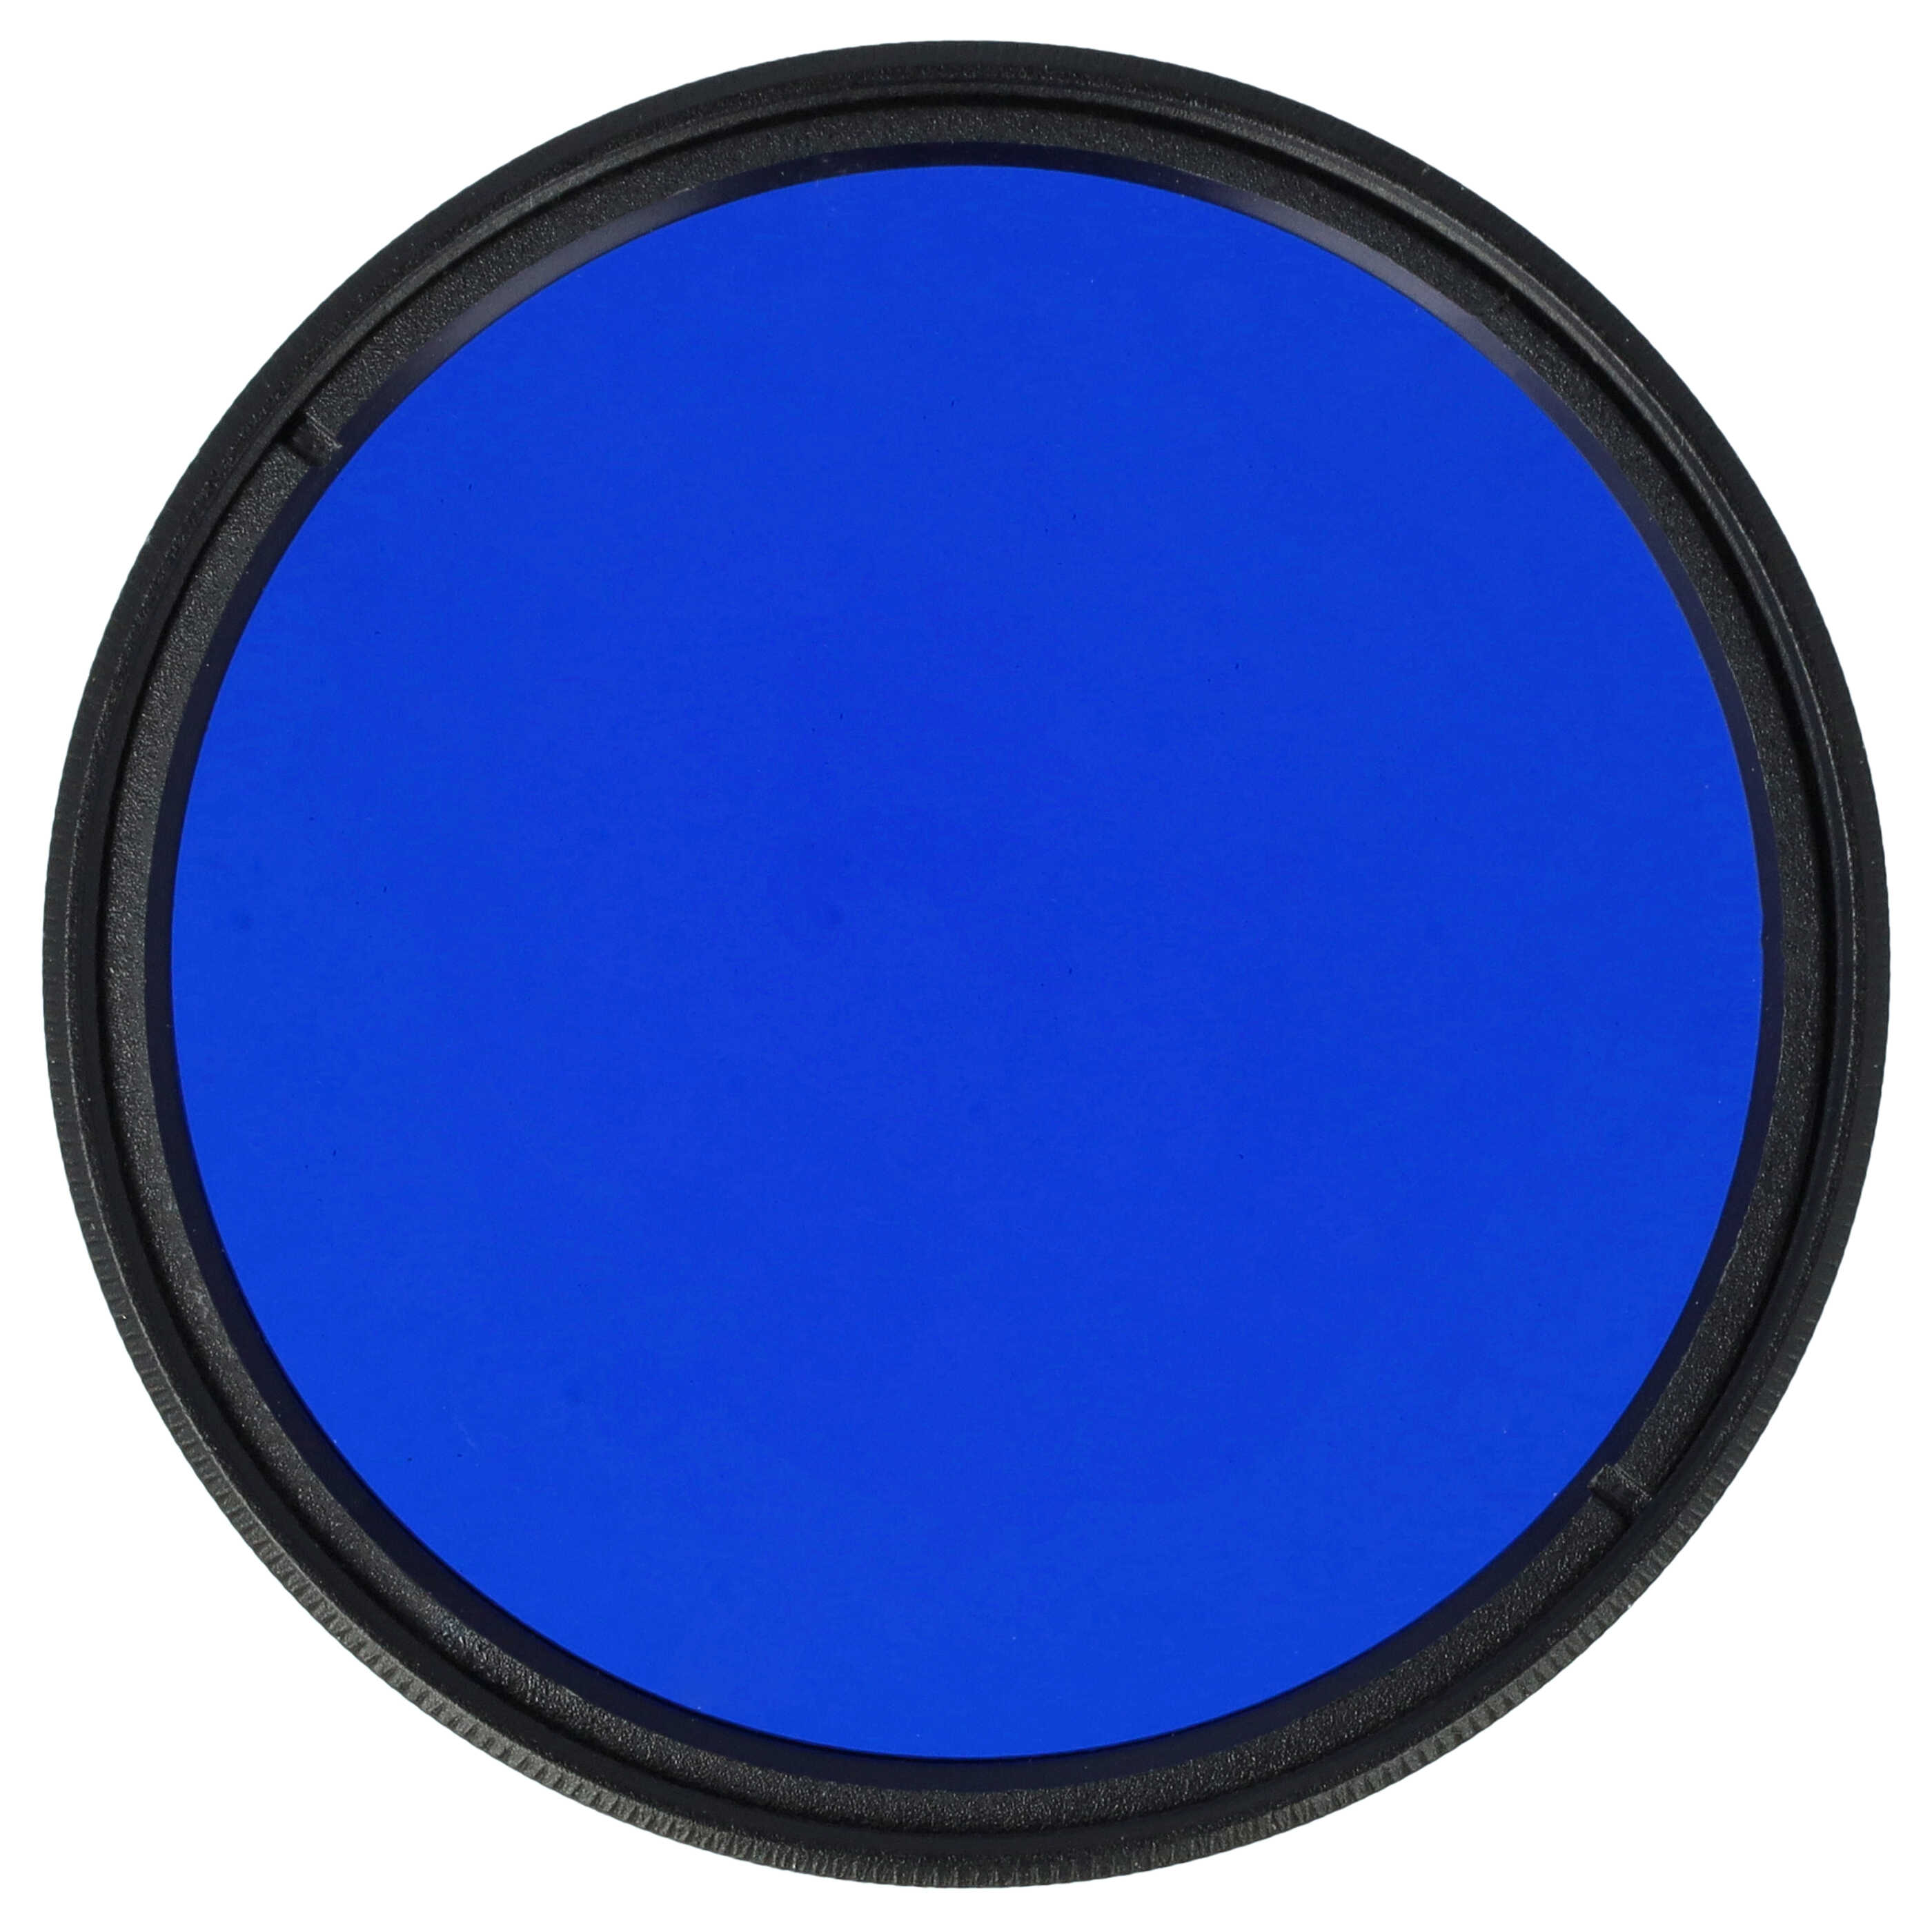 Filtro de color para objetivo de cámara con rosca de filtro de 52 mm - Filtro azul